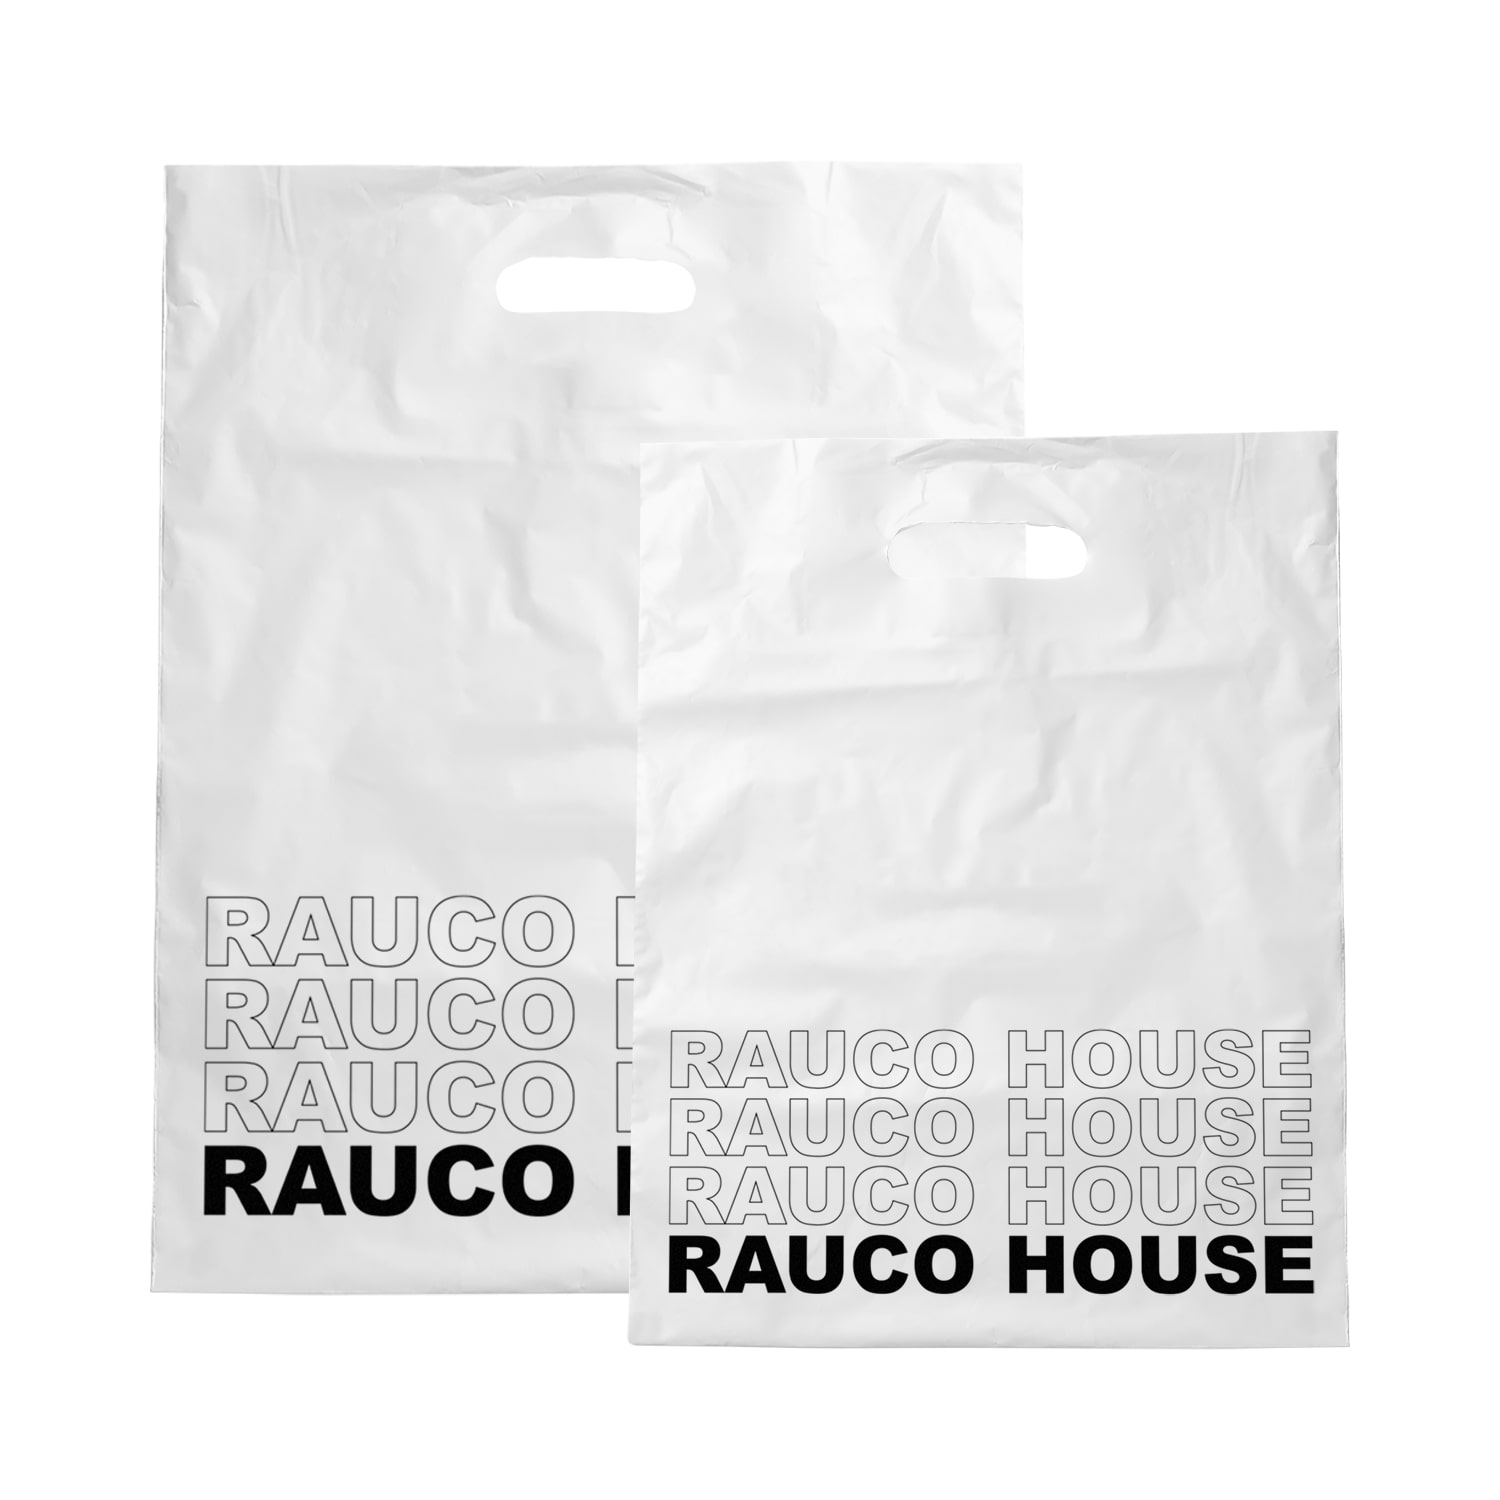 RAUCO HOUSE